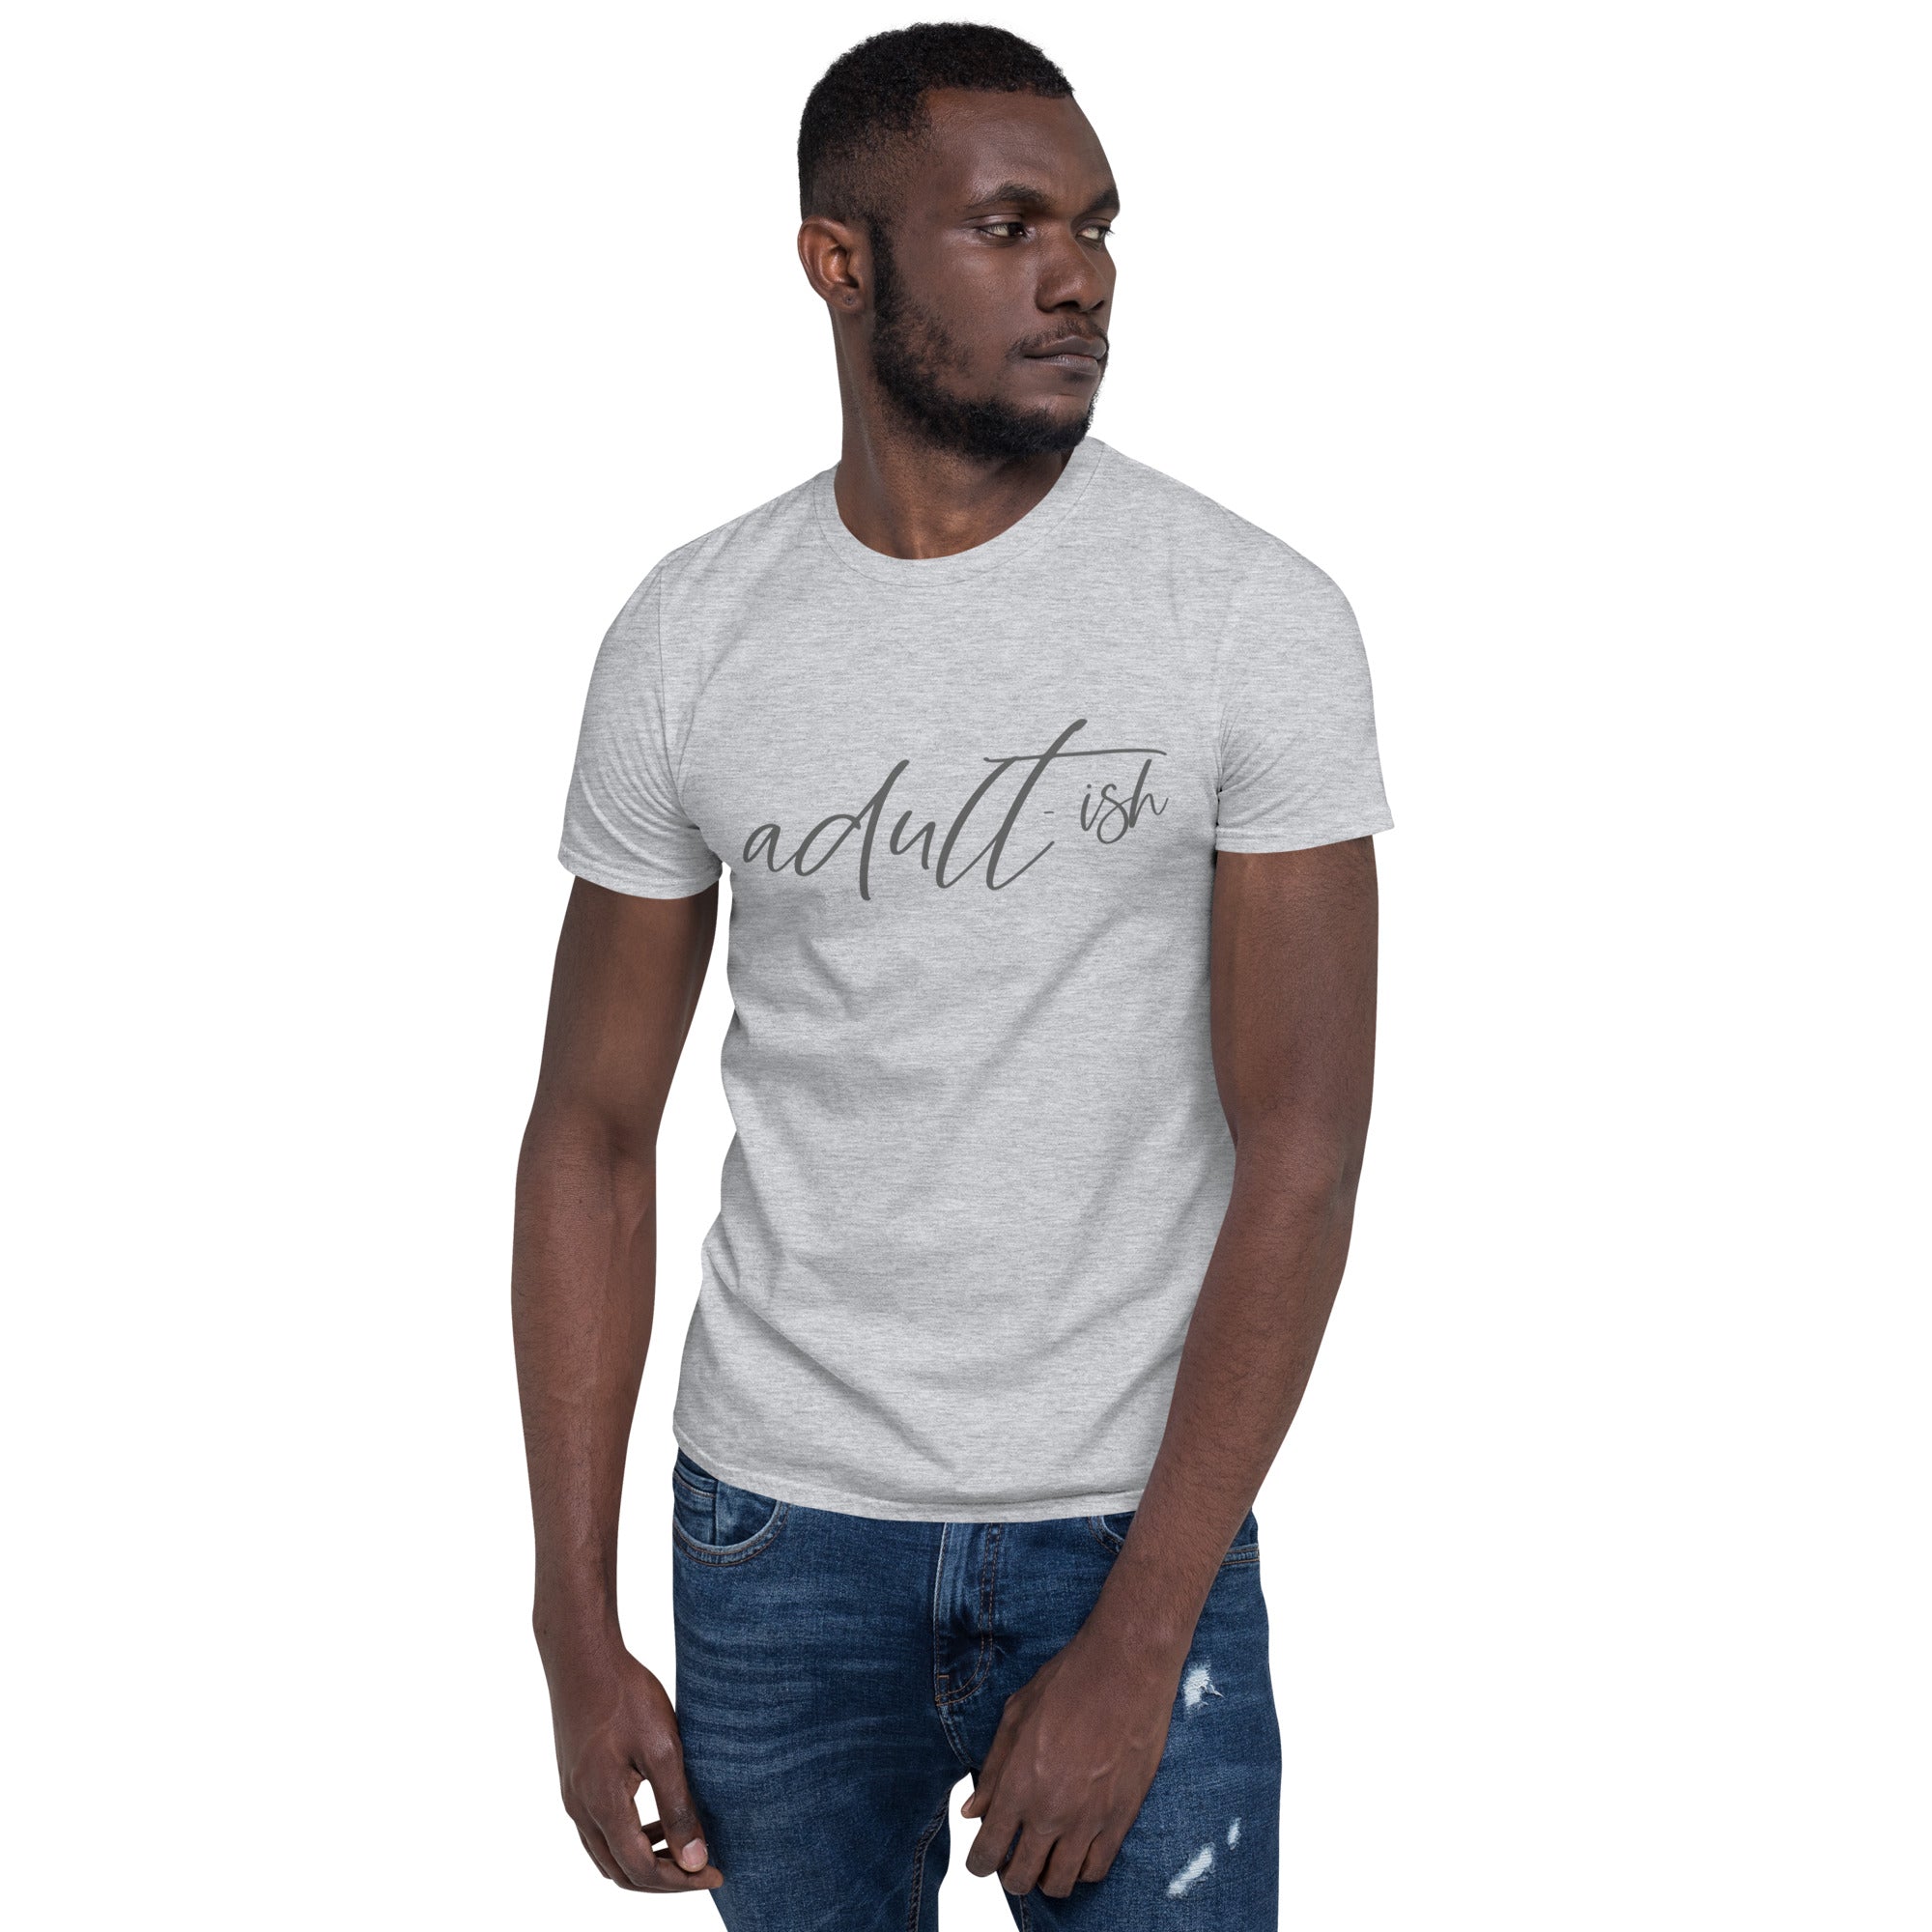 Adultish - Short-Sleeve Unisex T-Shirt